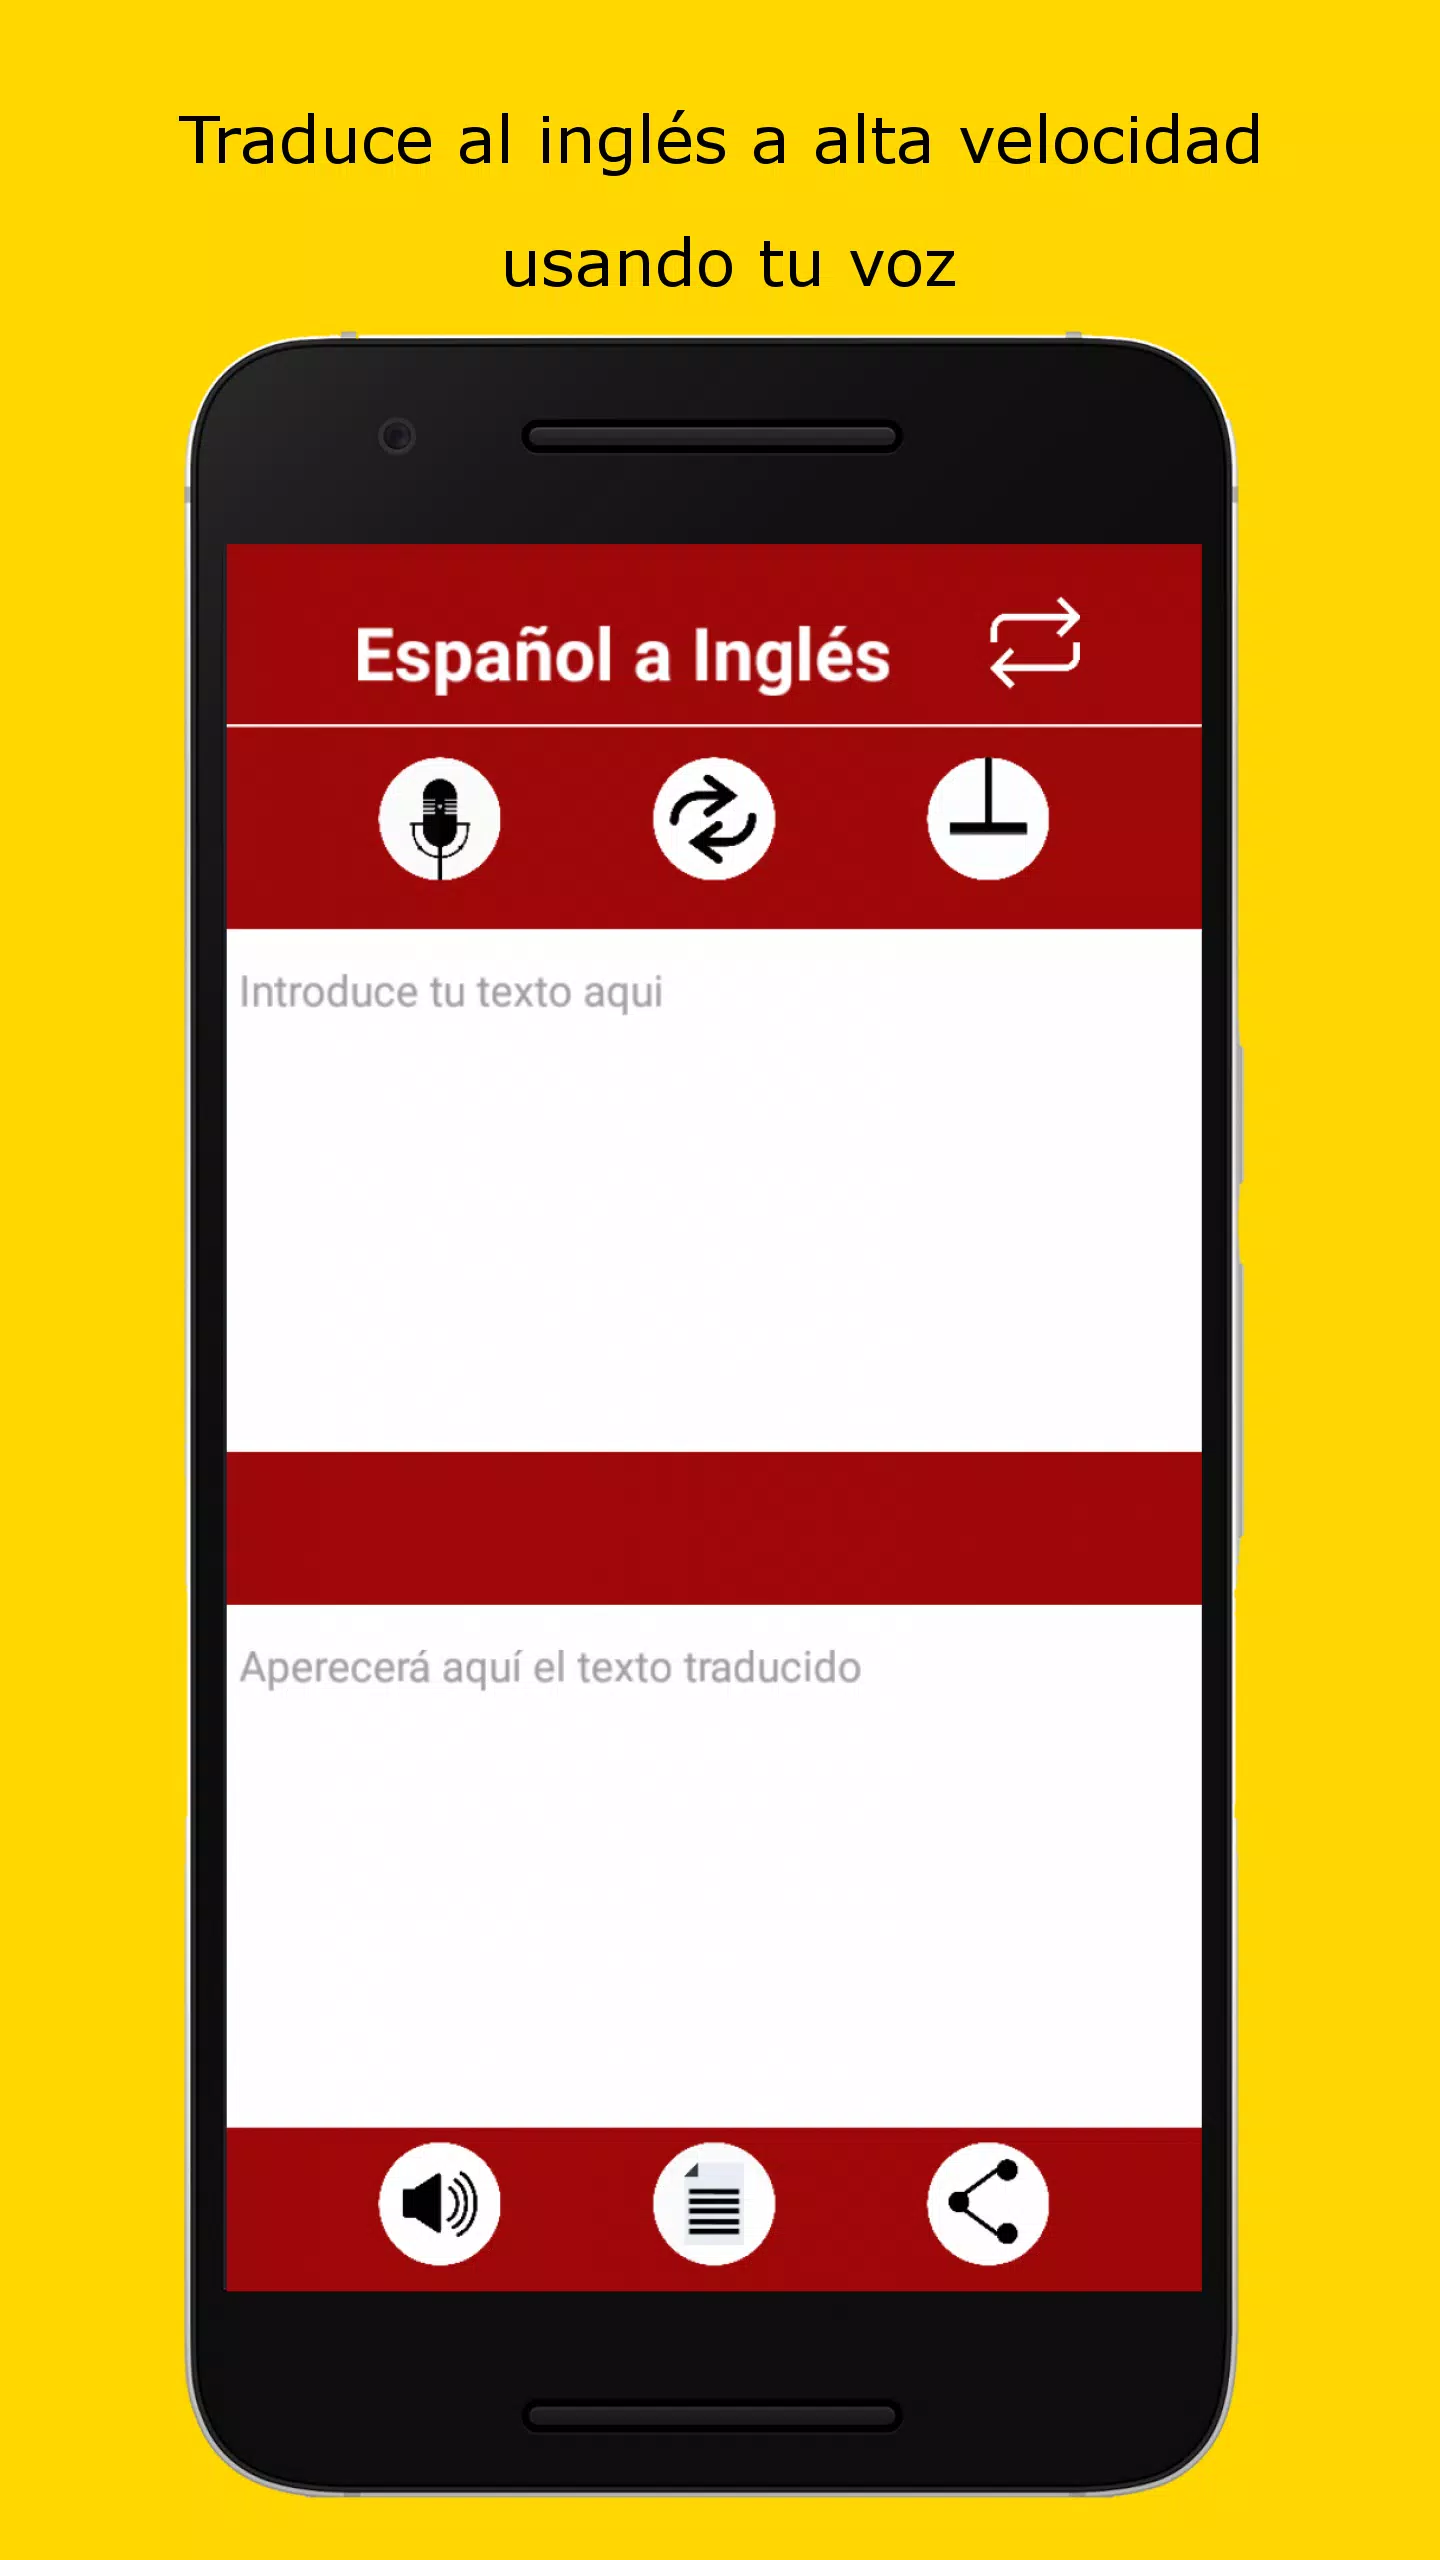 Traductor Ingles Español con Voz APK pour Android Télécharger